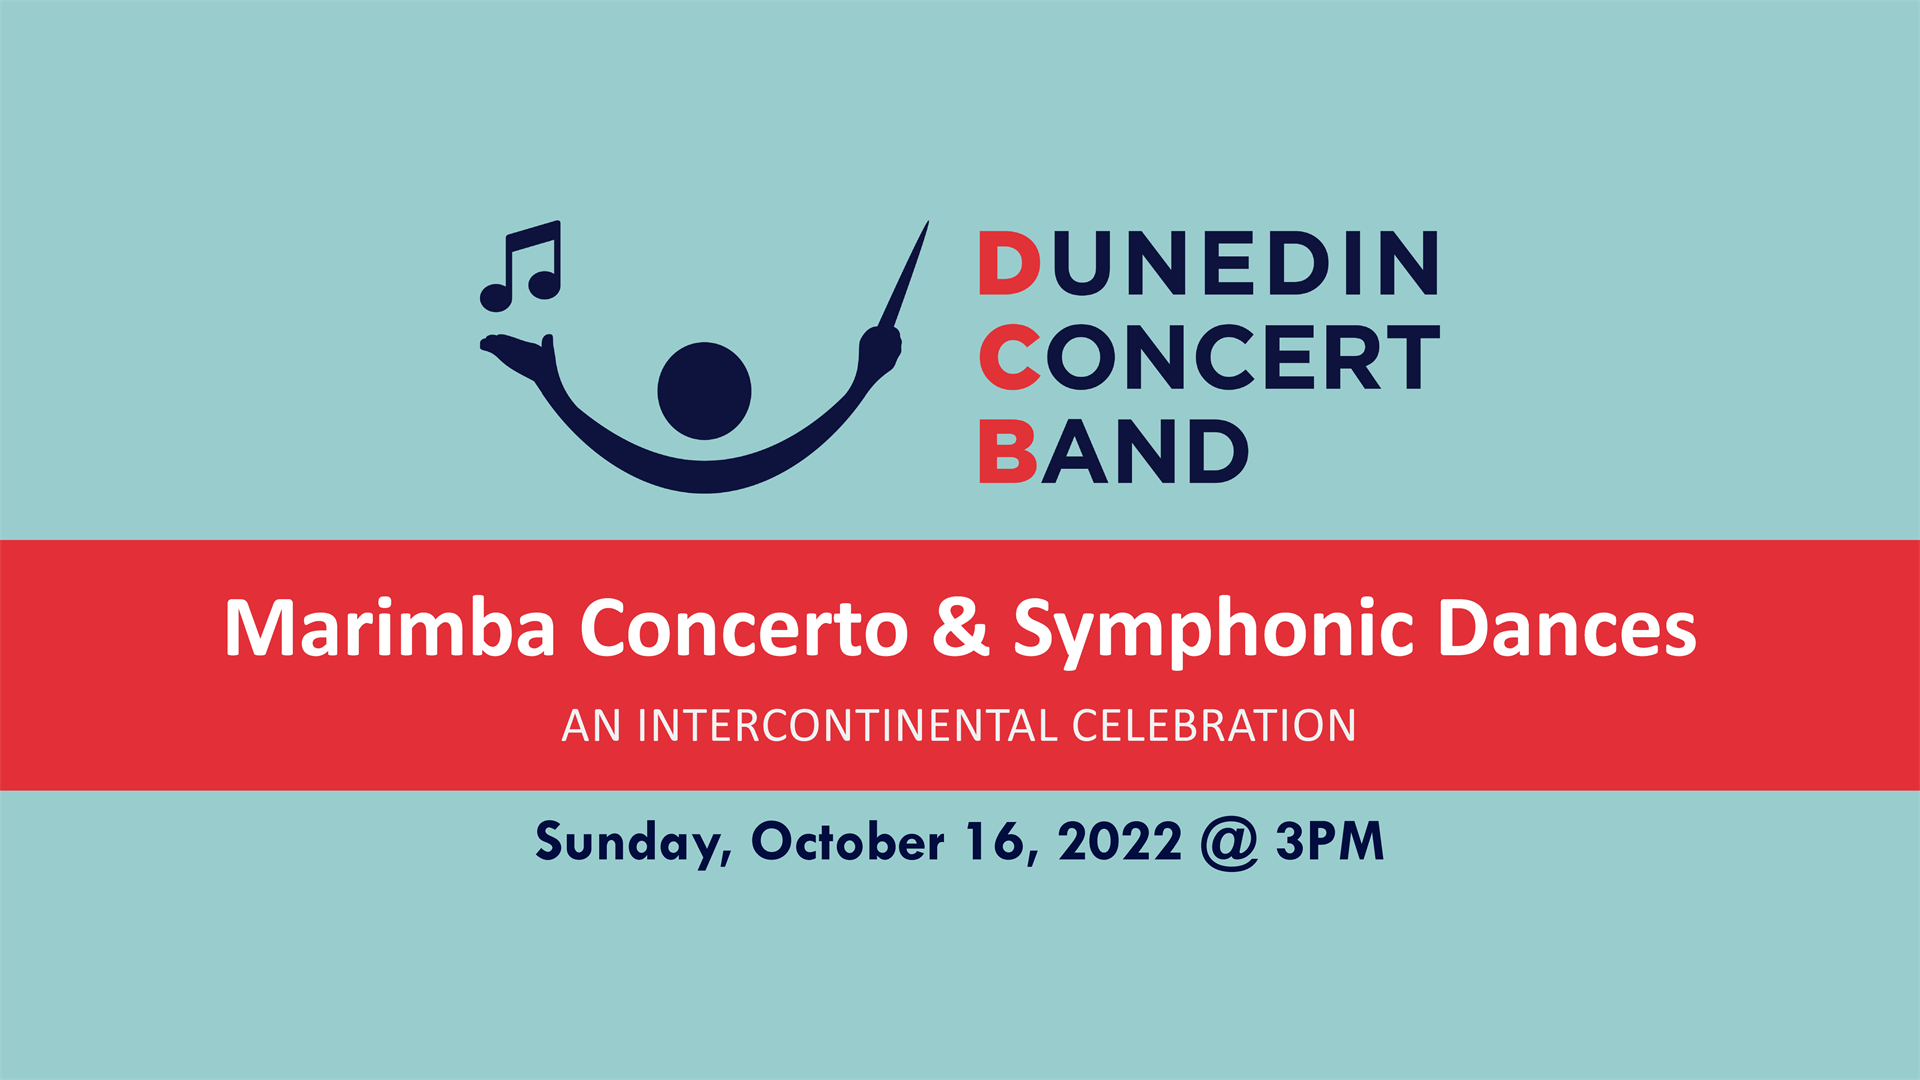 Dunedin Concert Band performs a marimba concerto and symphonic dances 